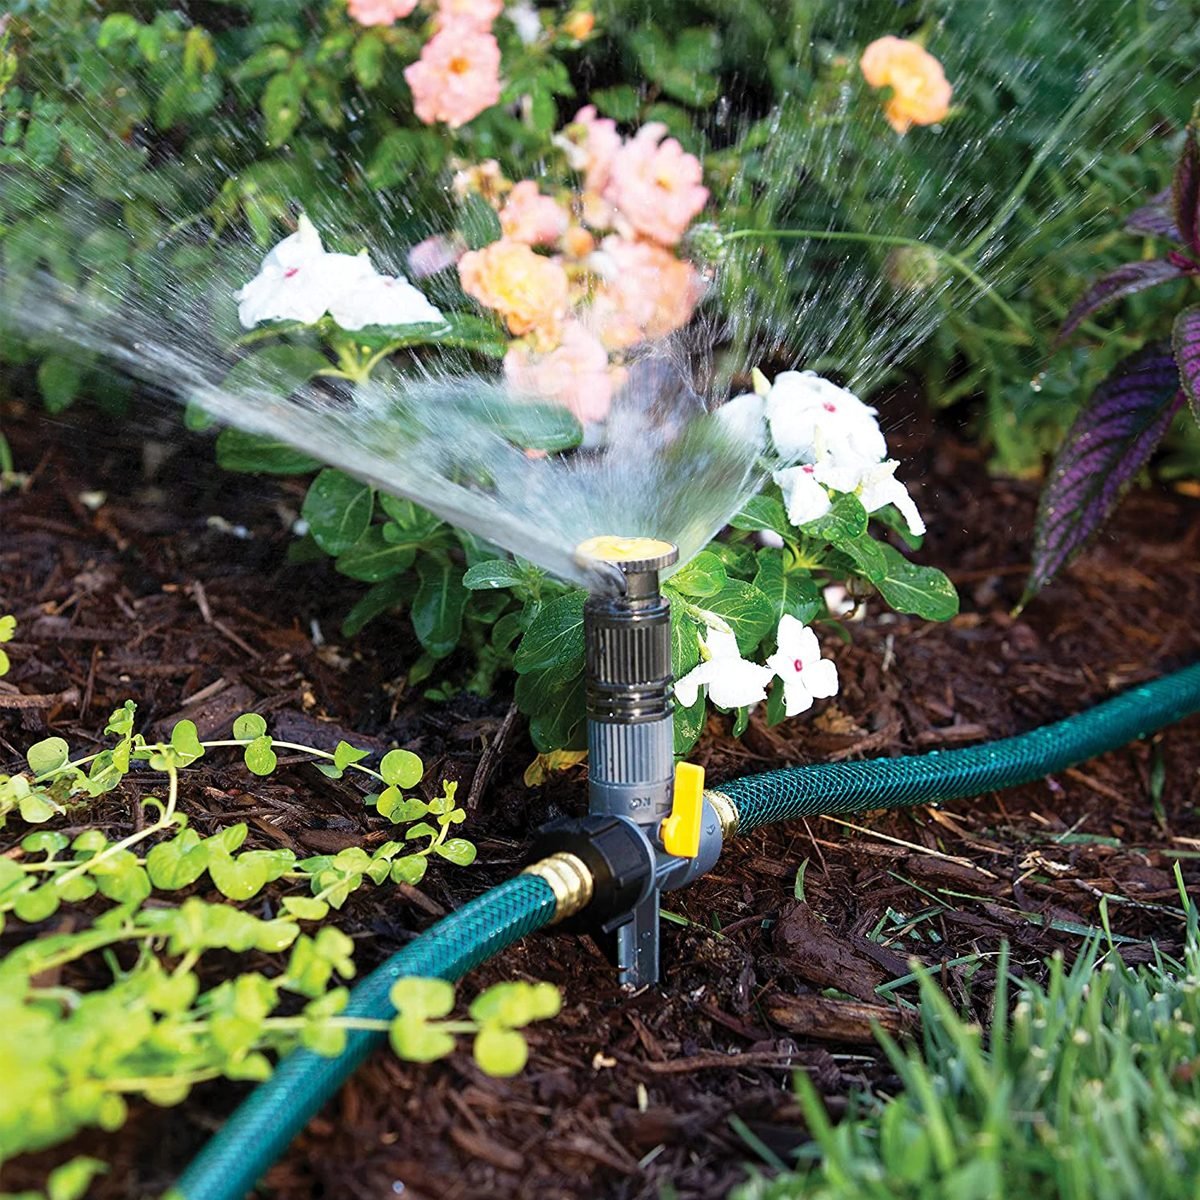 Find the Best Sprinkler for Your Yard